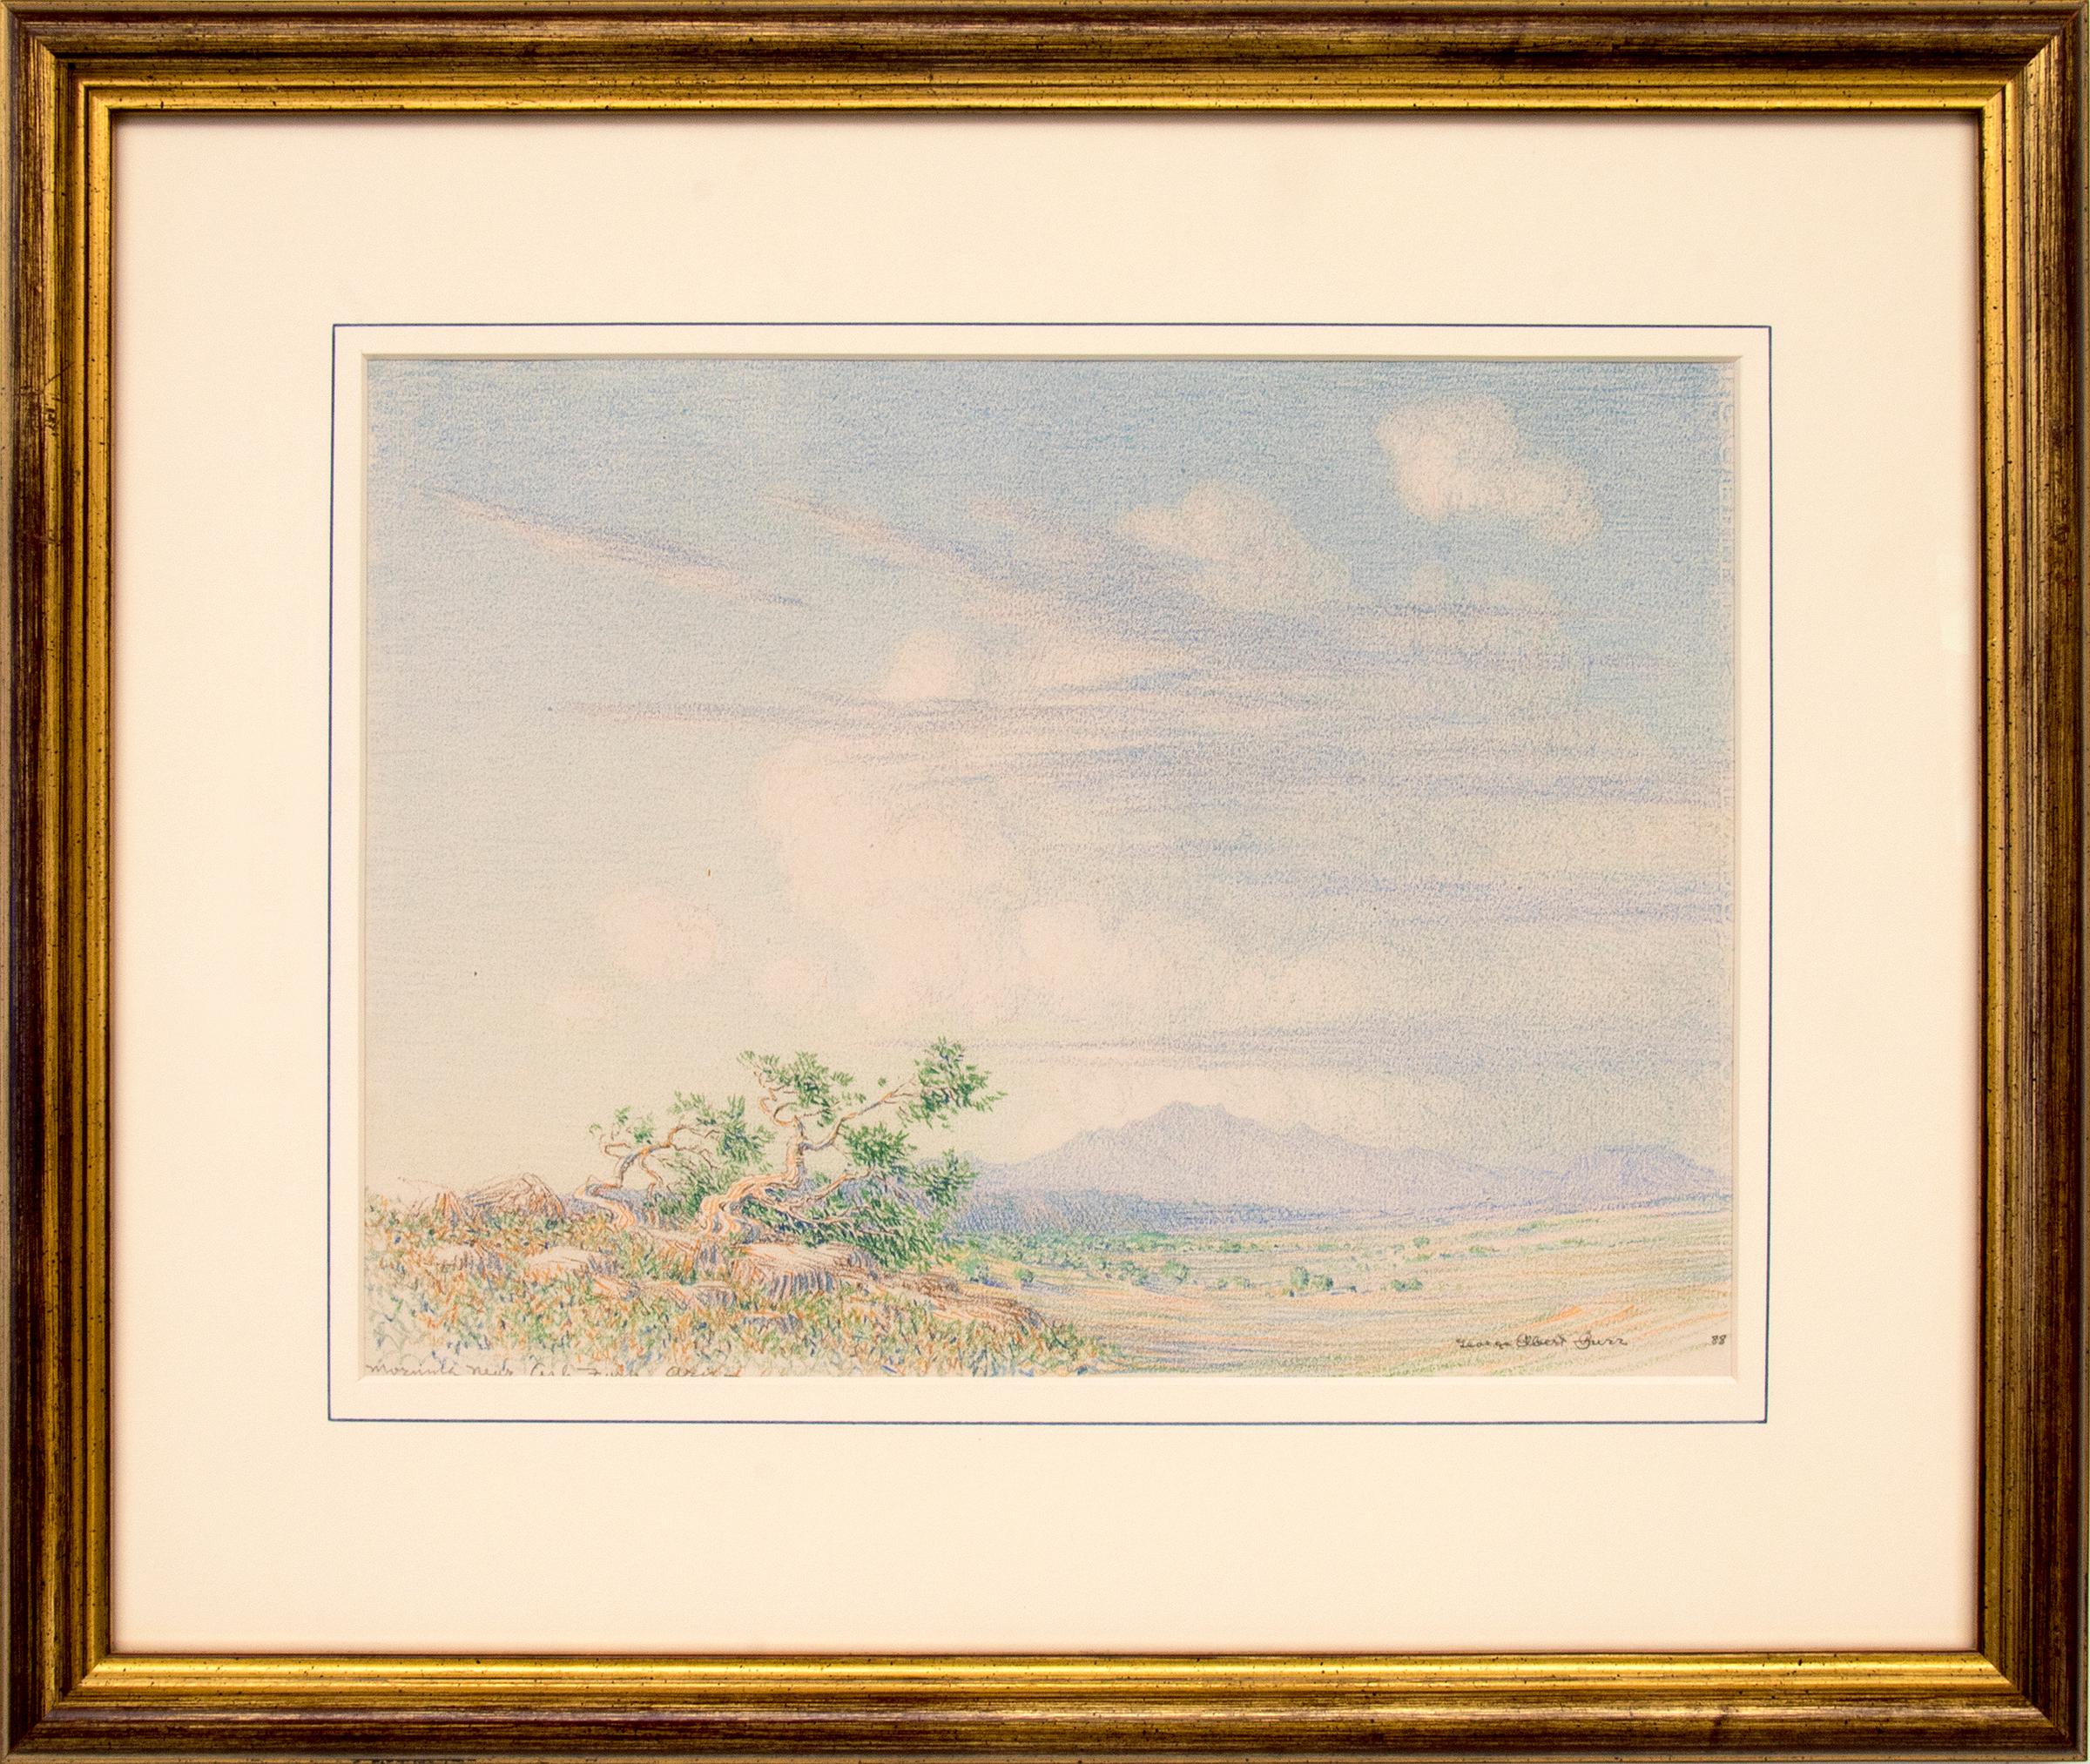 Morgen in der Nähe von Arizona, Sommer-Landschaftszeichnung aus dem Südwesten der Wüste, 1880er Jahre